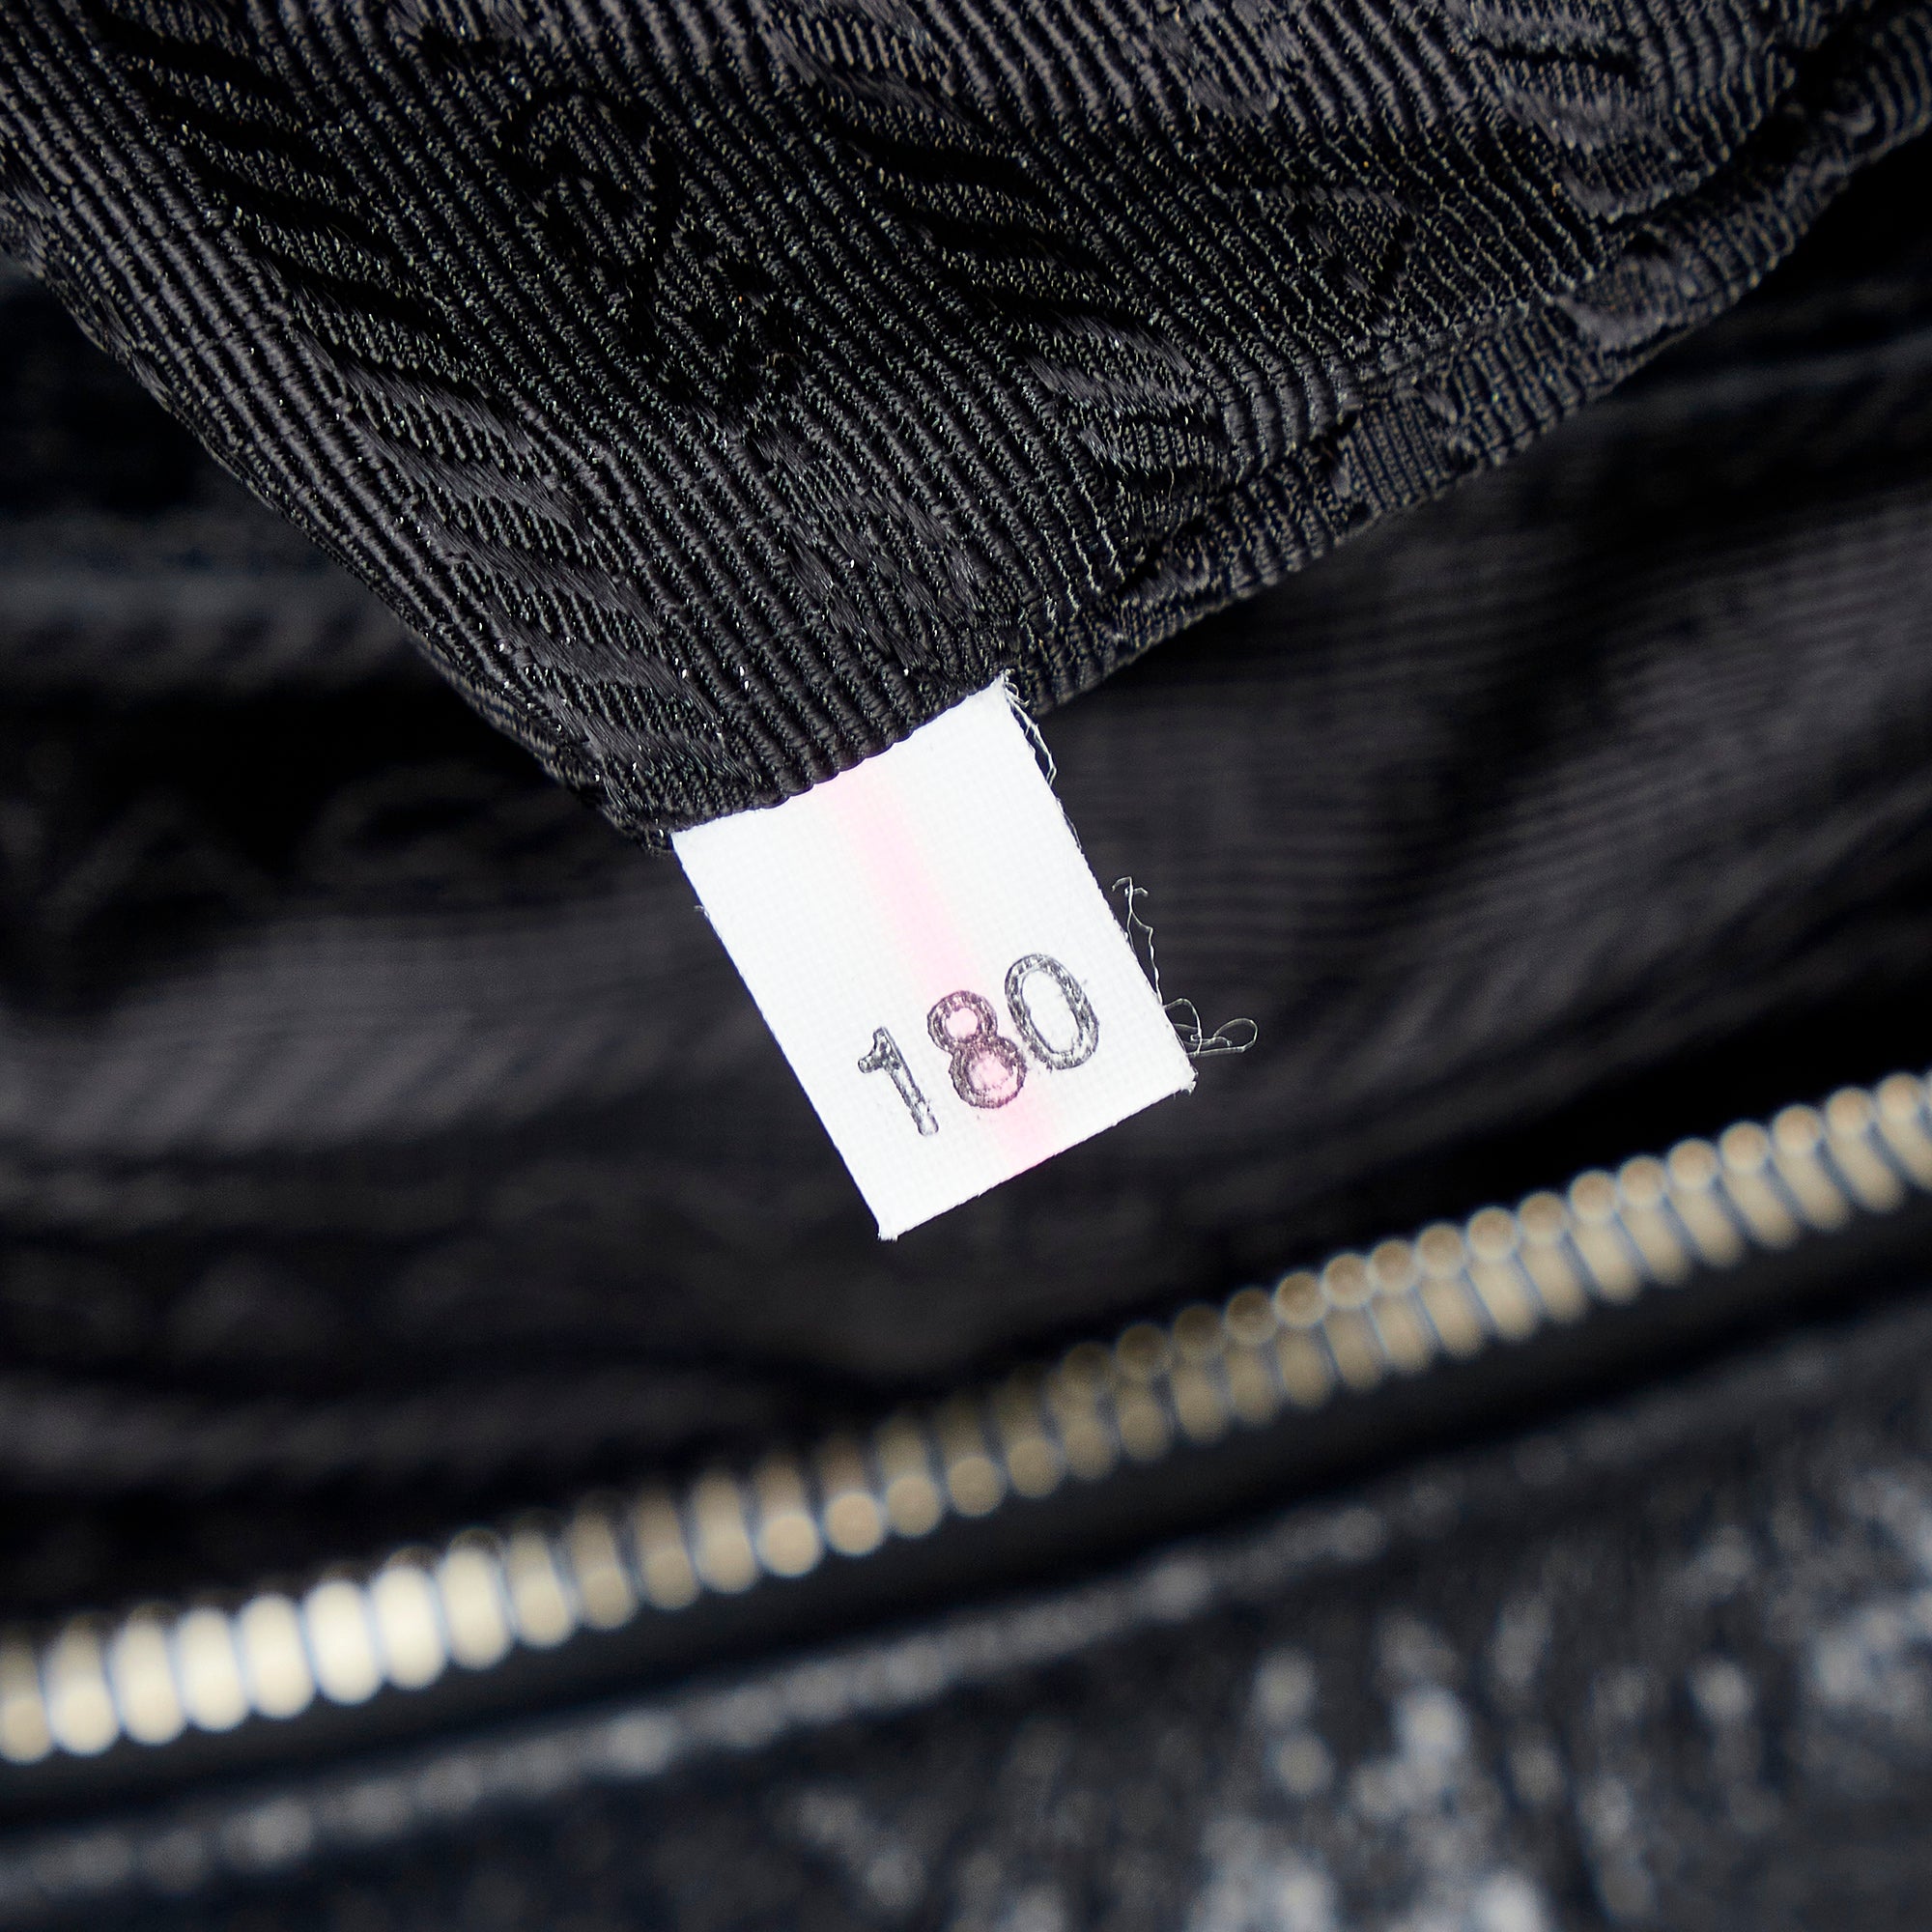 Black Prada Cervo Lux Chain Shoulder Bag – Designer Revival